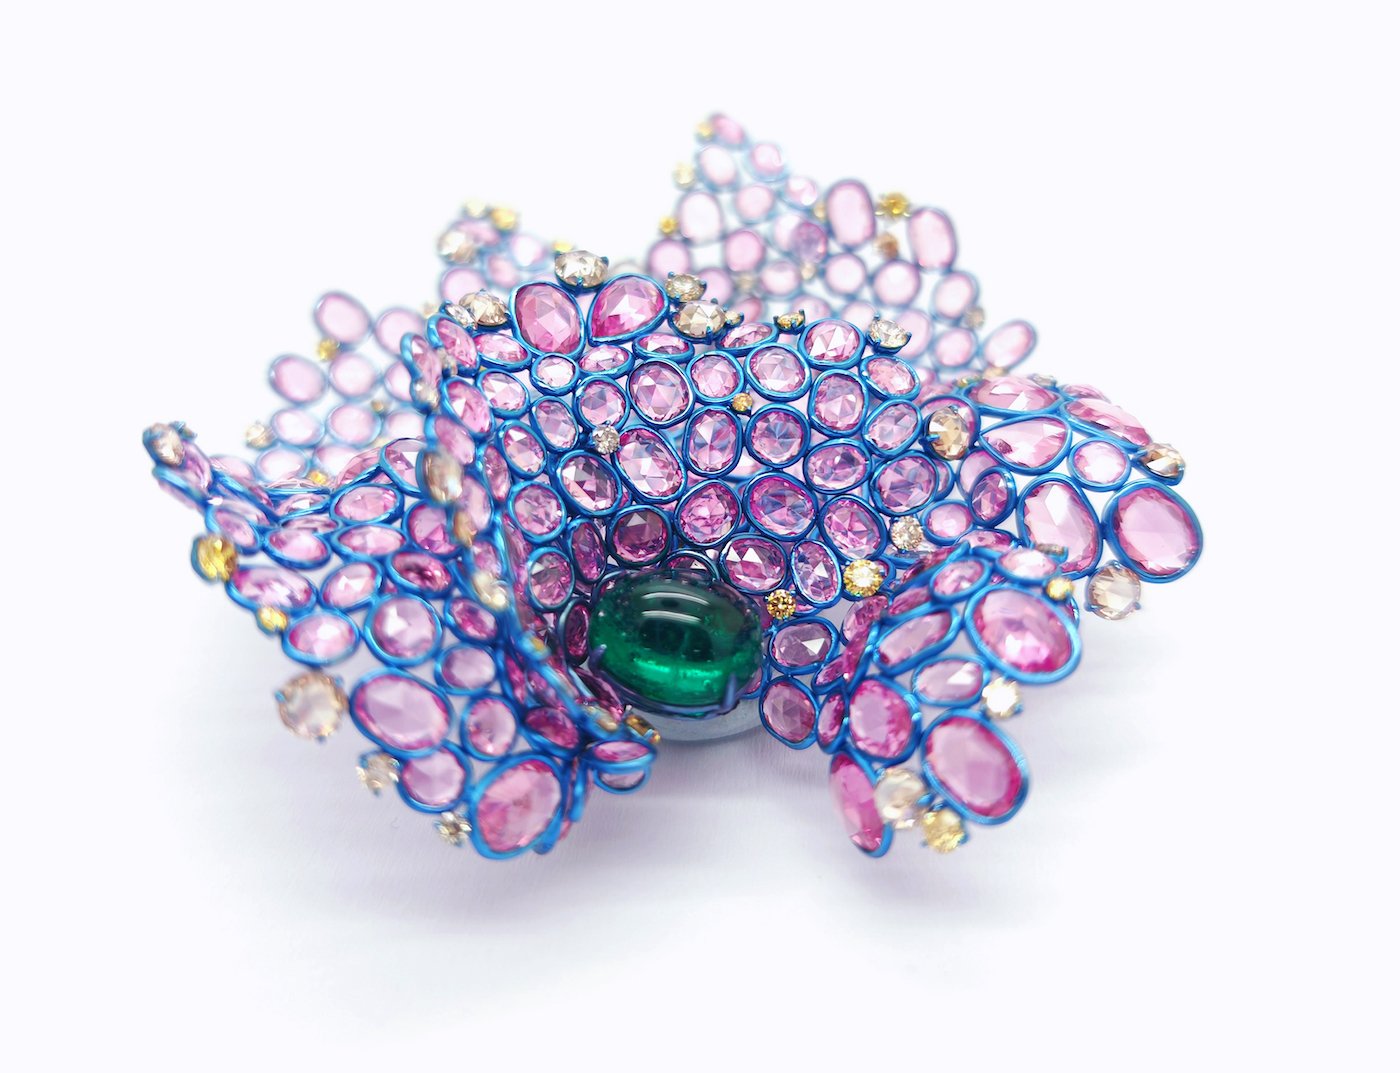 Aso Leon's captivating titanium jewellery